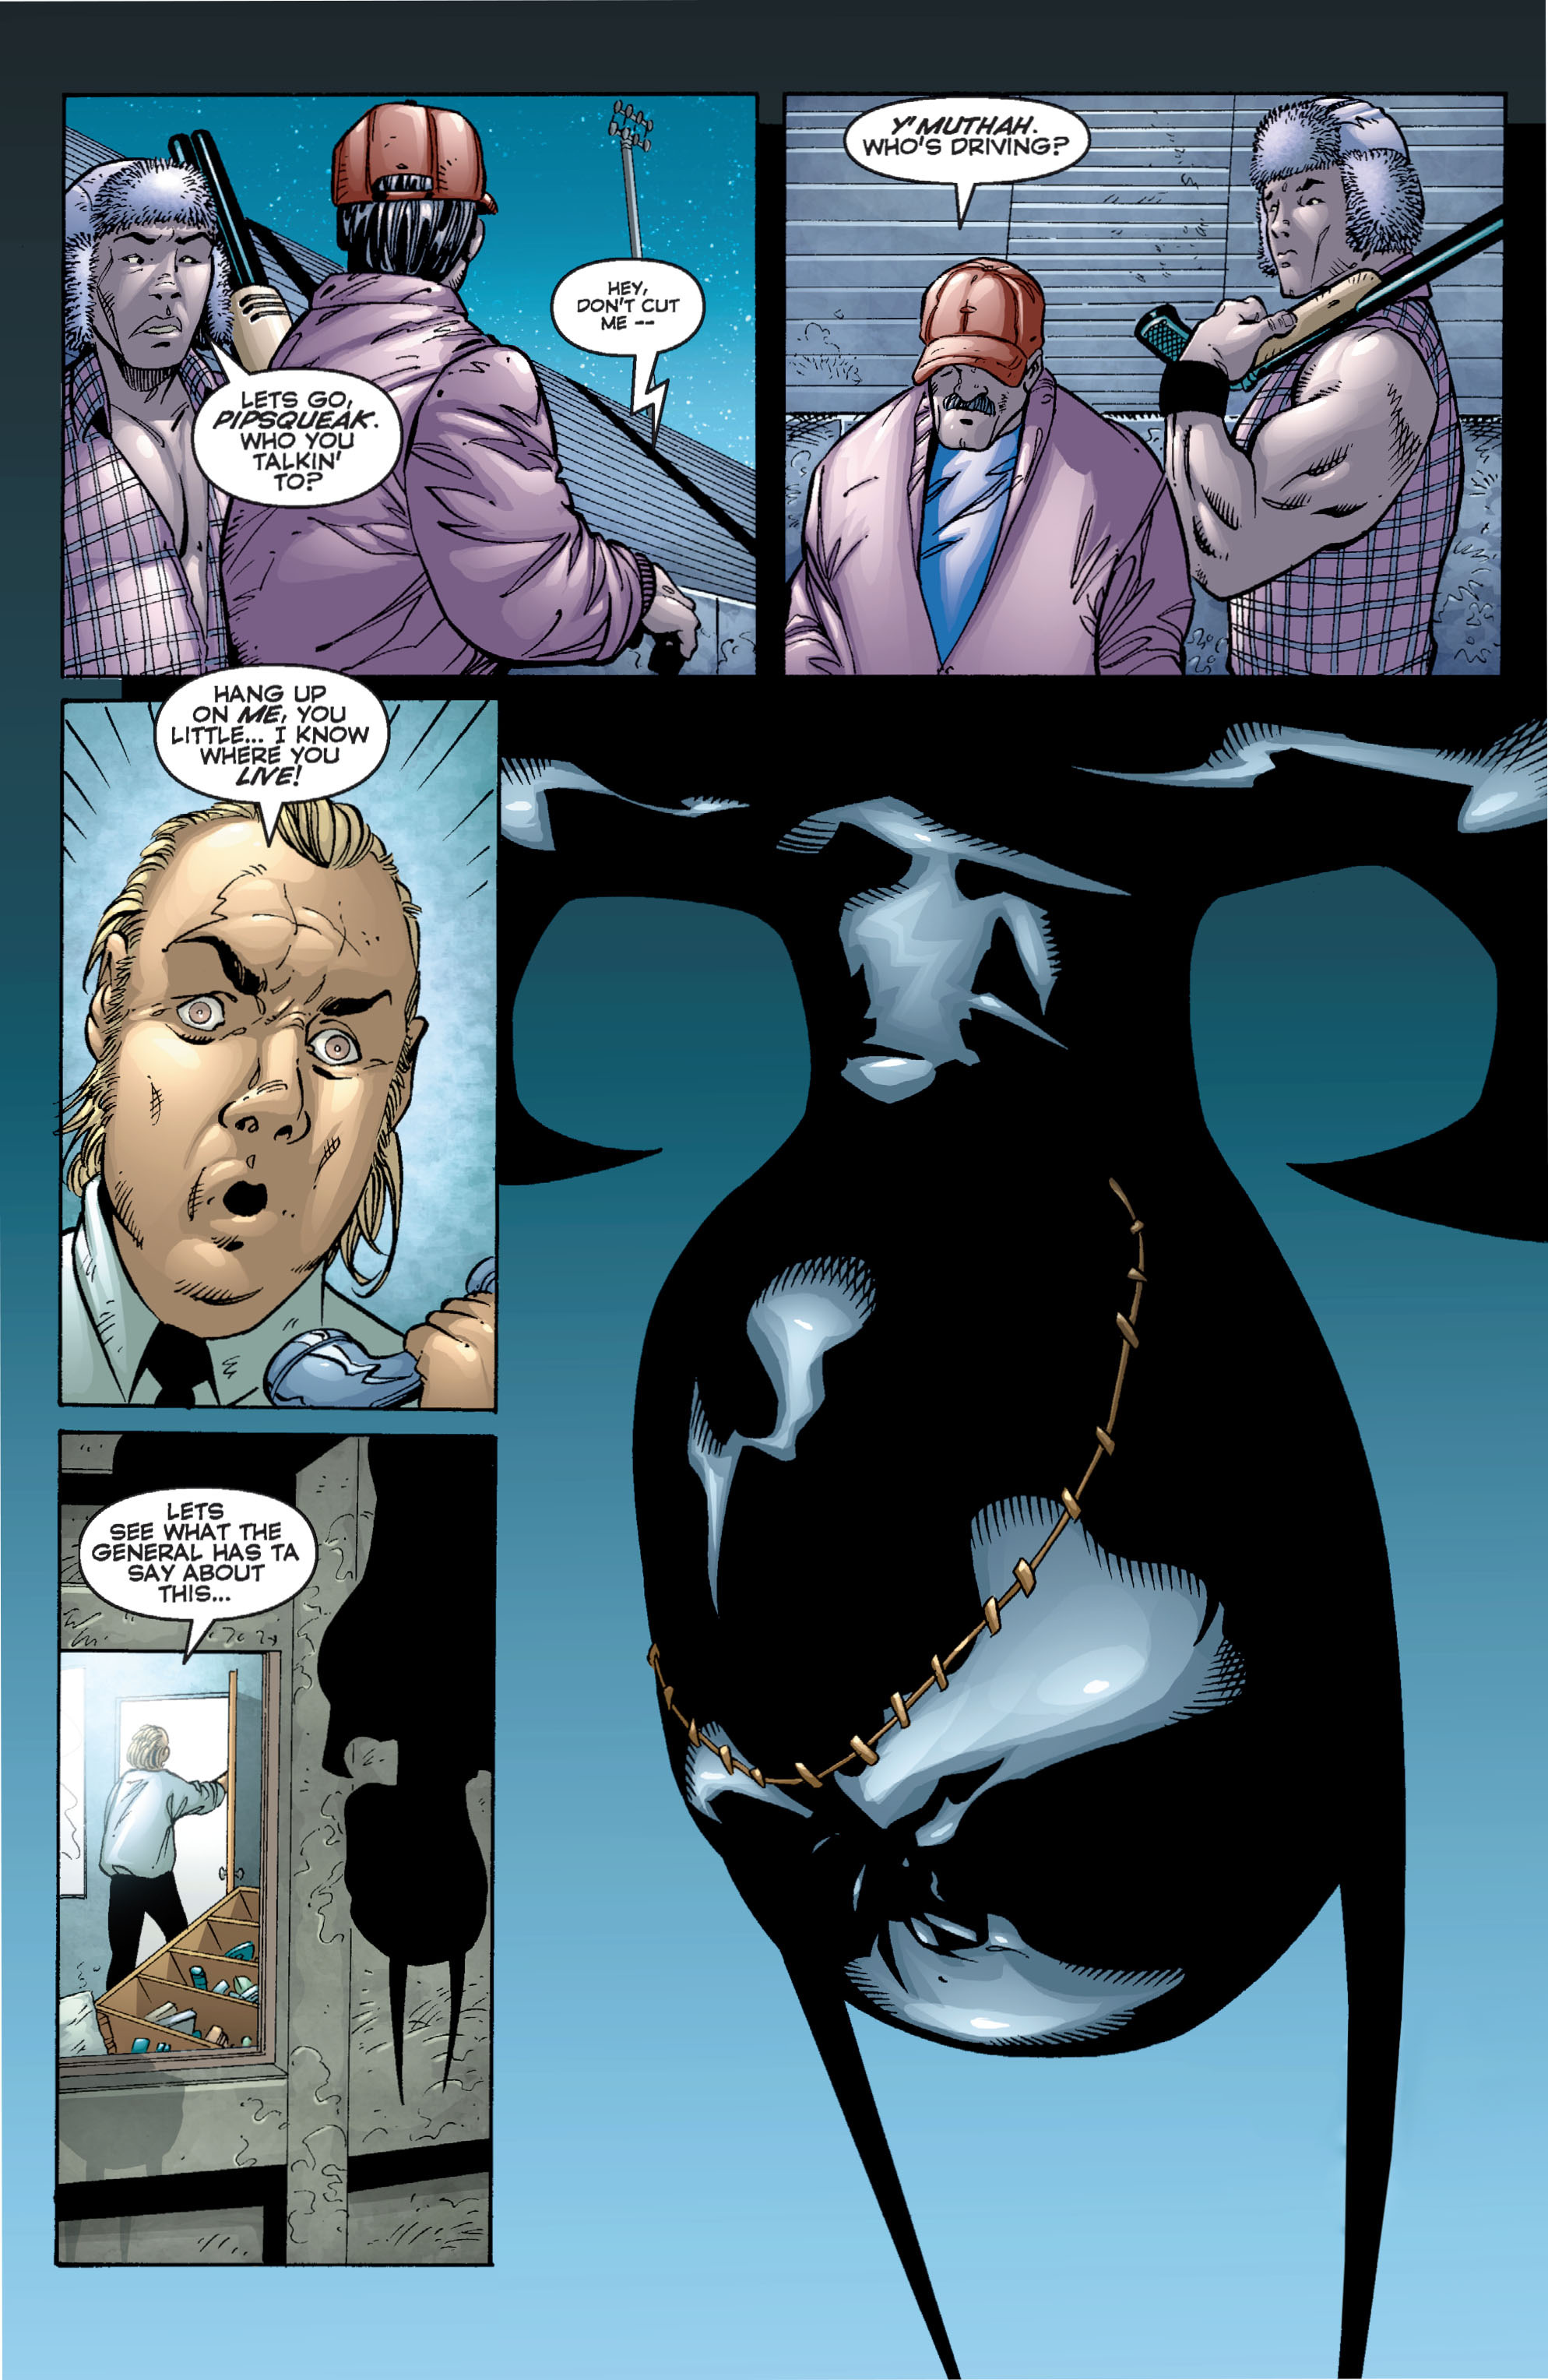 DC Comics/Dark Horse Comics: Justice League Full #1 - English 375